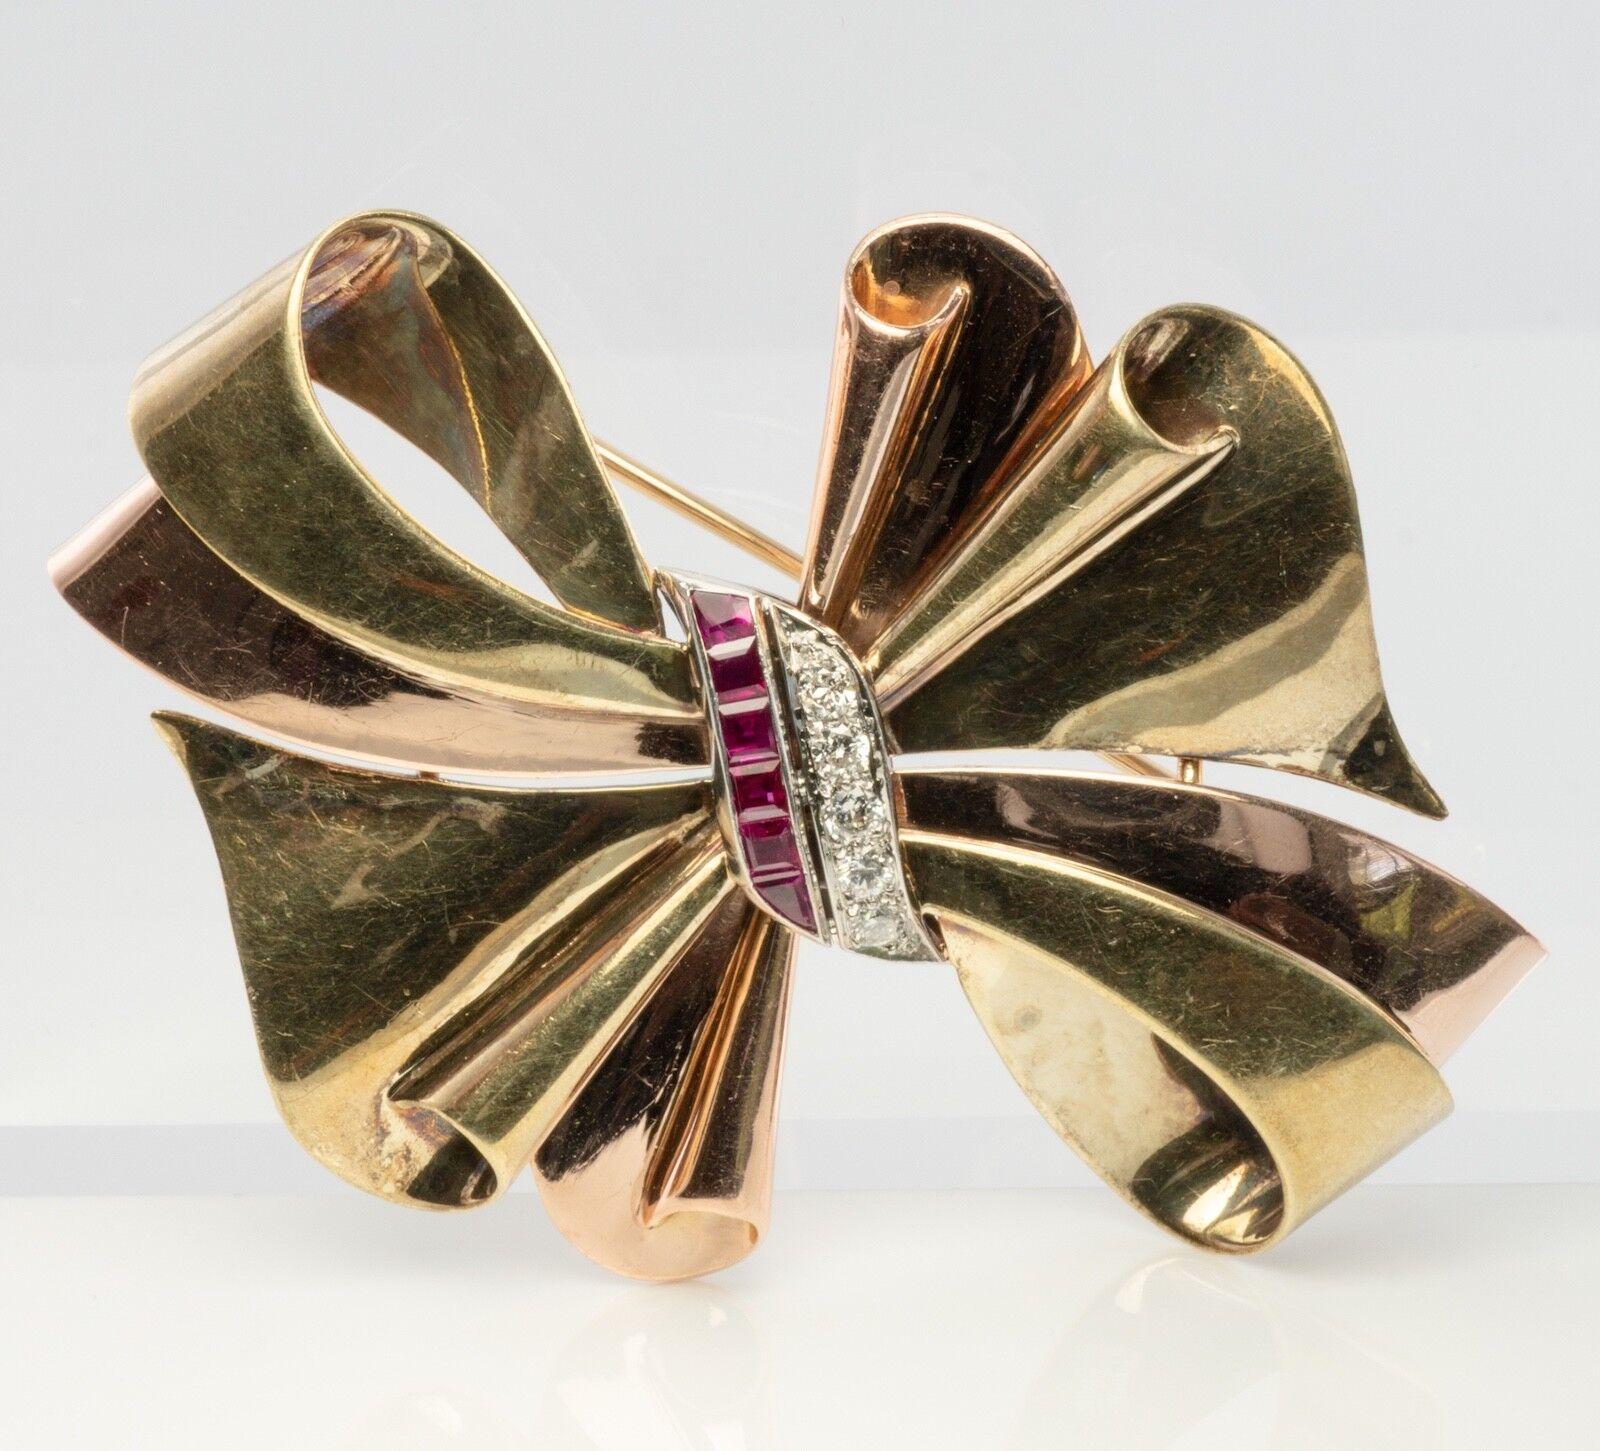 Vintage authentische Tiffany & Co Diamant-Brosche, Schleife Brosche, Rubin-Brosche, Band-Brosche. Diese Goldbrosche ist fein in Kombination aus 14K Gelb- und Grüngold gefertigt. Sechs natürliche Erde abgebaut Rubine messen etwa 2mm. Es sind sehr